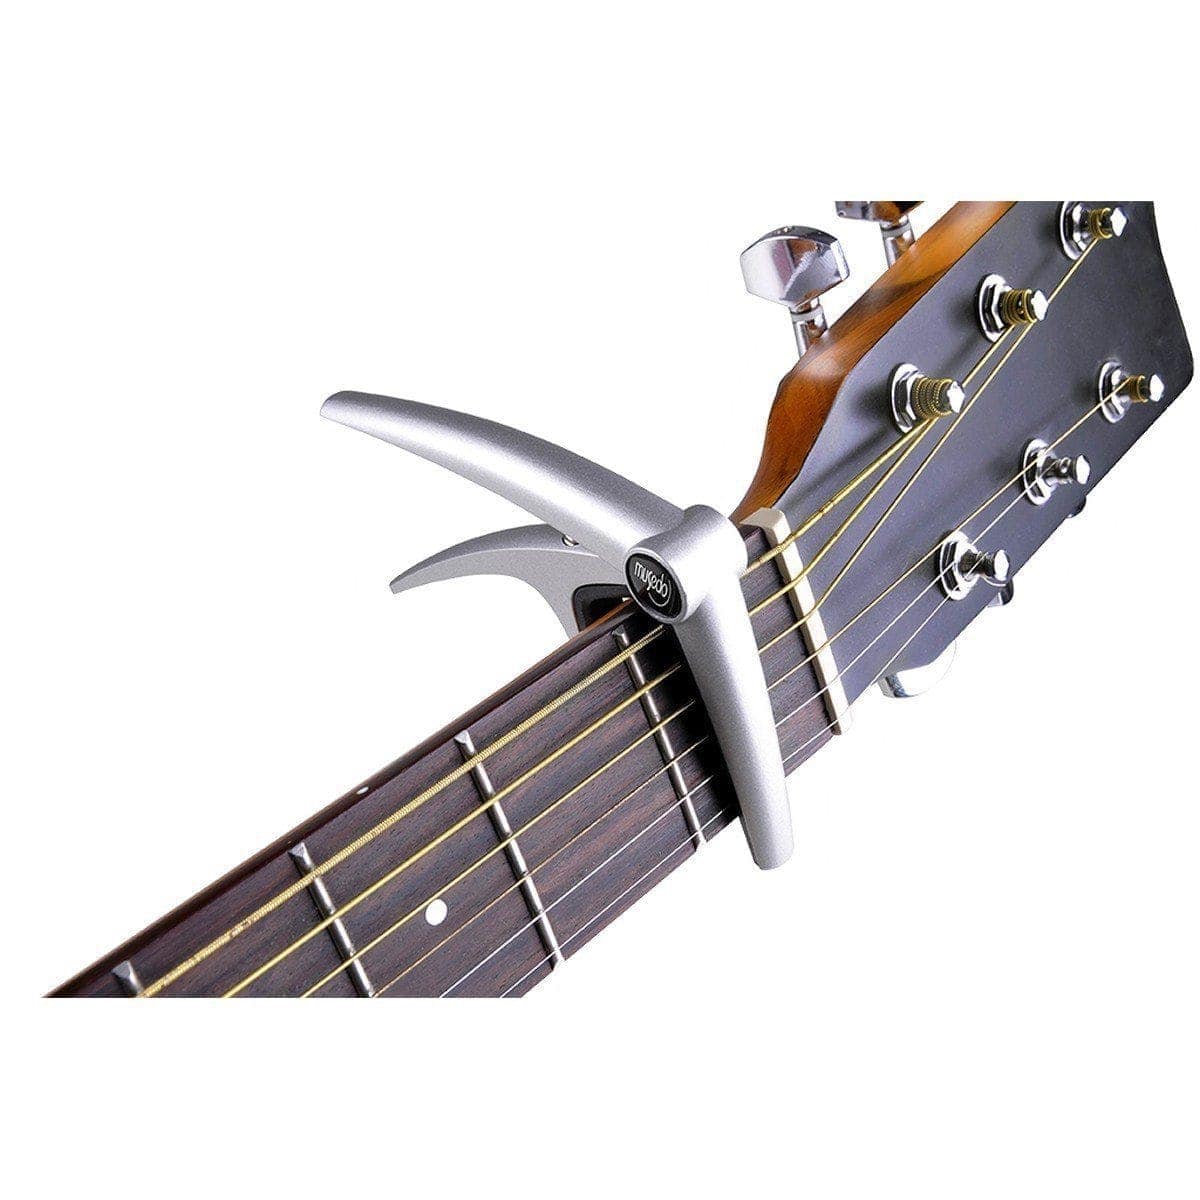 Musedo MC-1 Guitar Capo in Silver